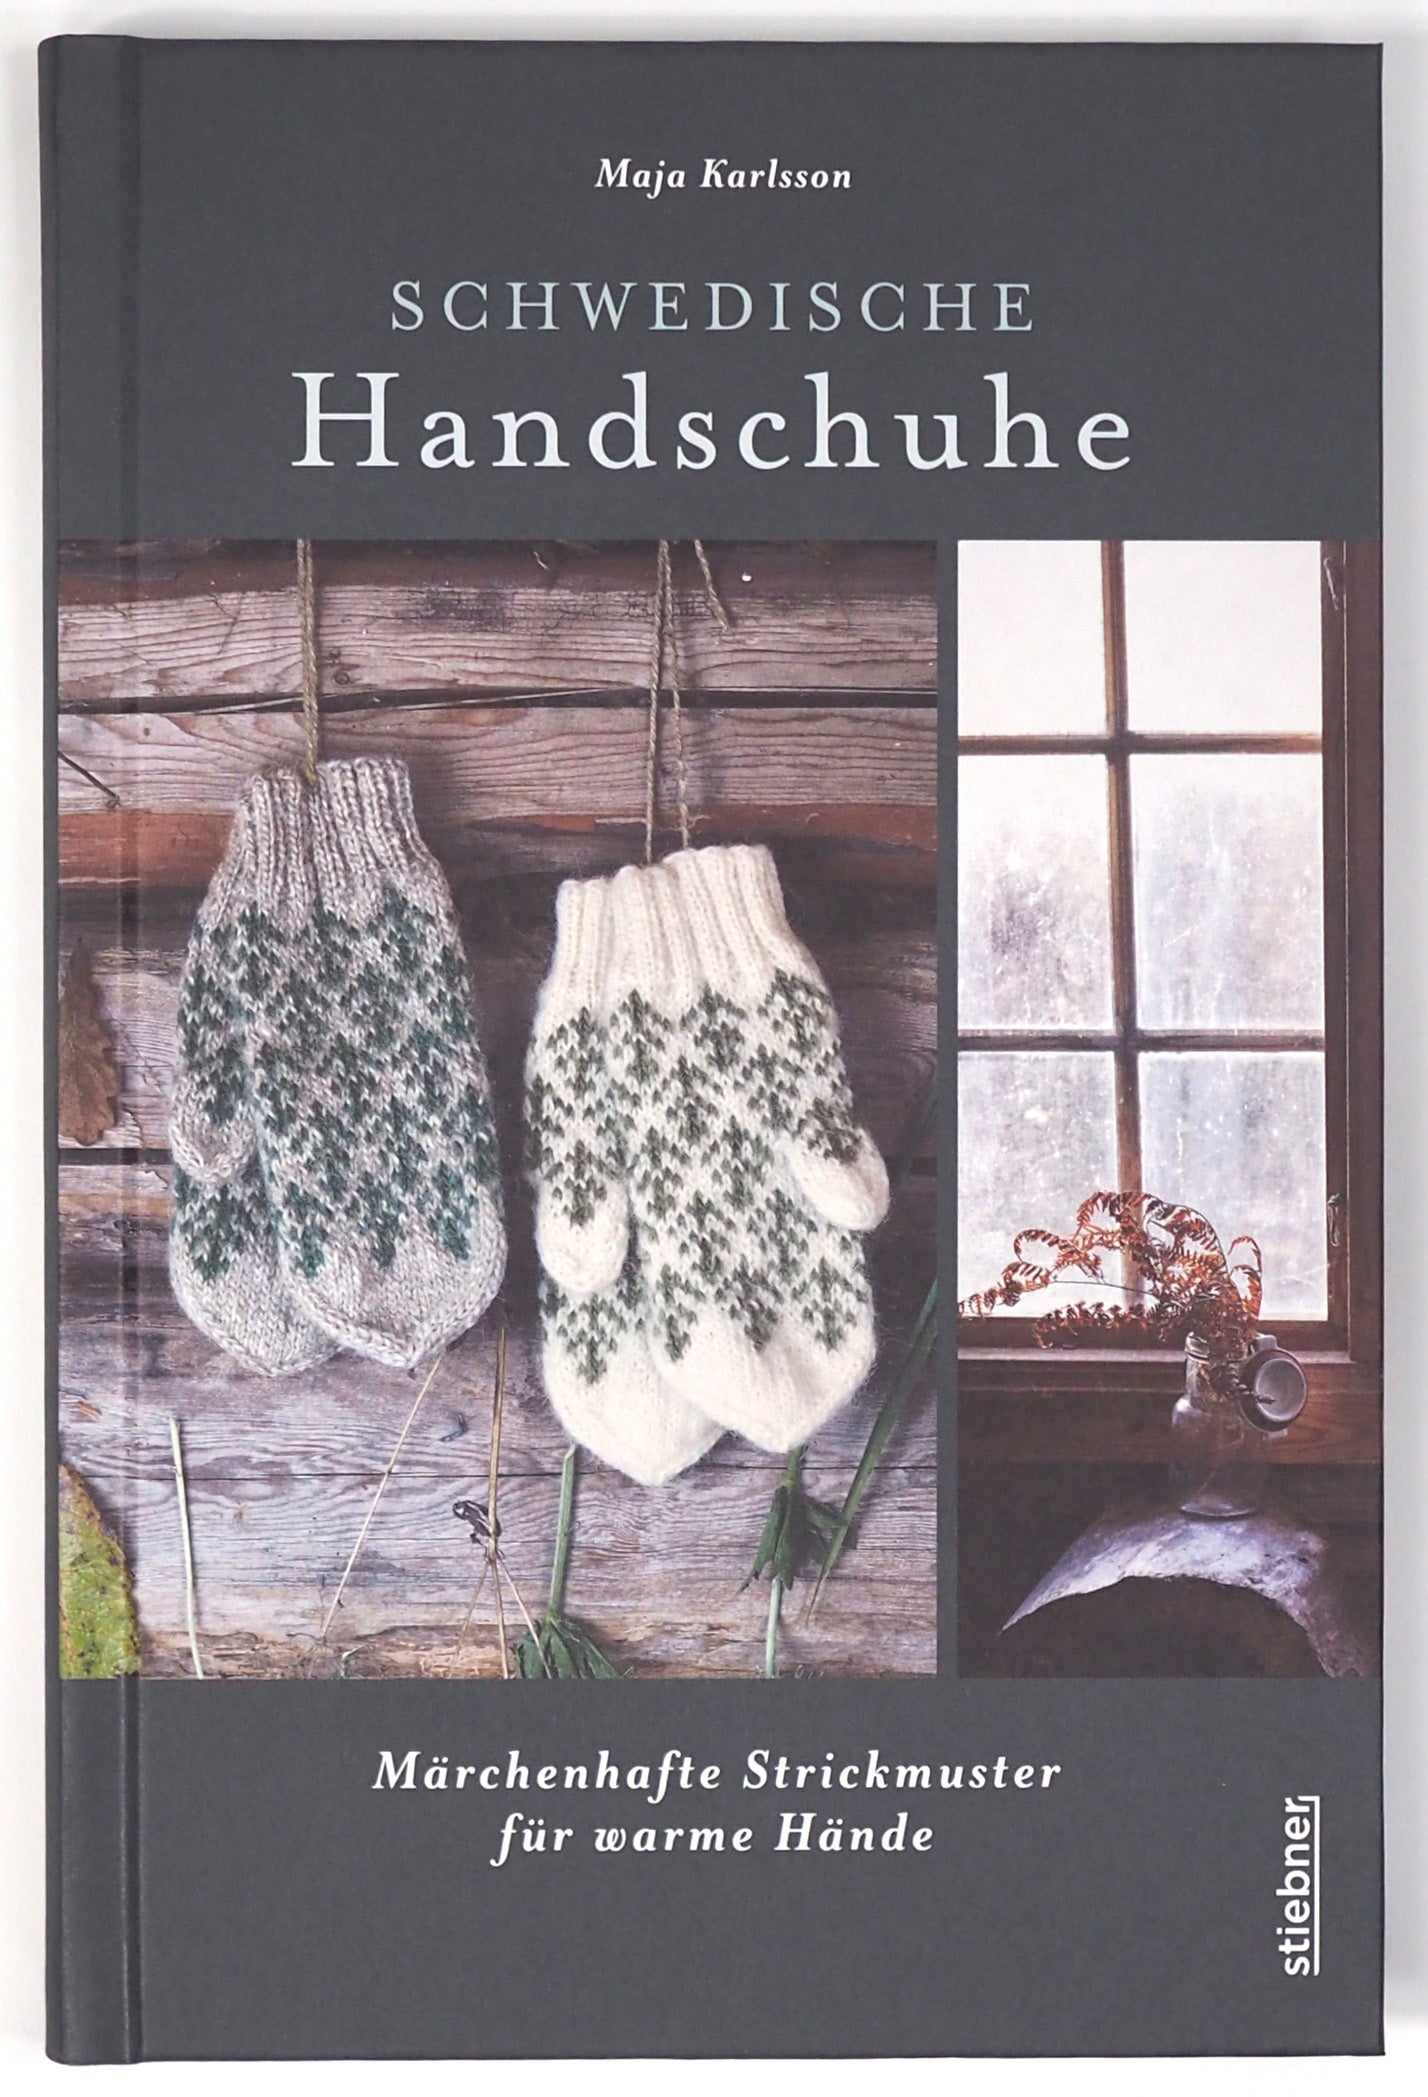 Schwedische Handschuhe stricken by Maja Karlsson - German Edition -